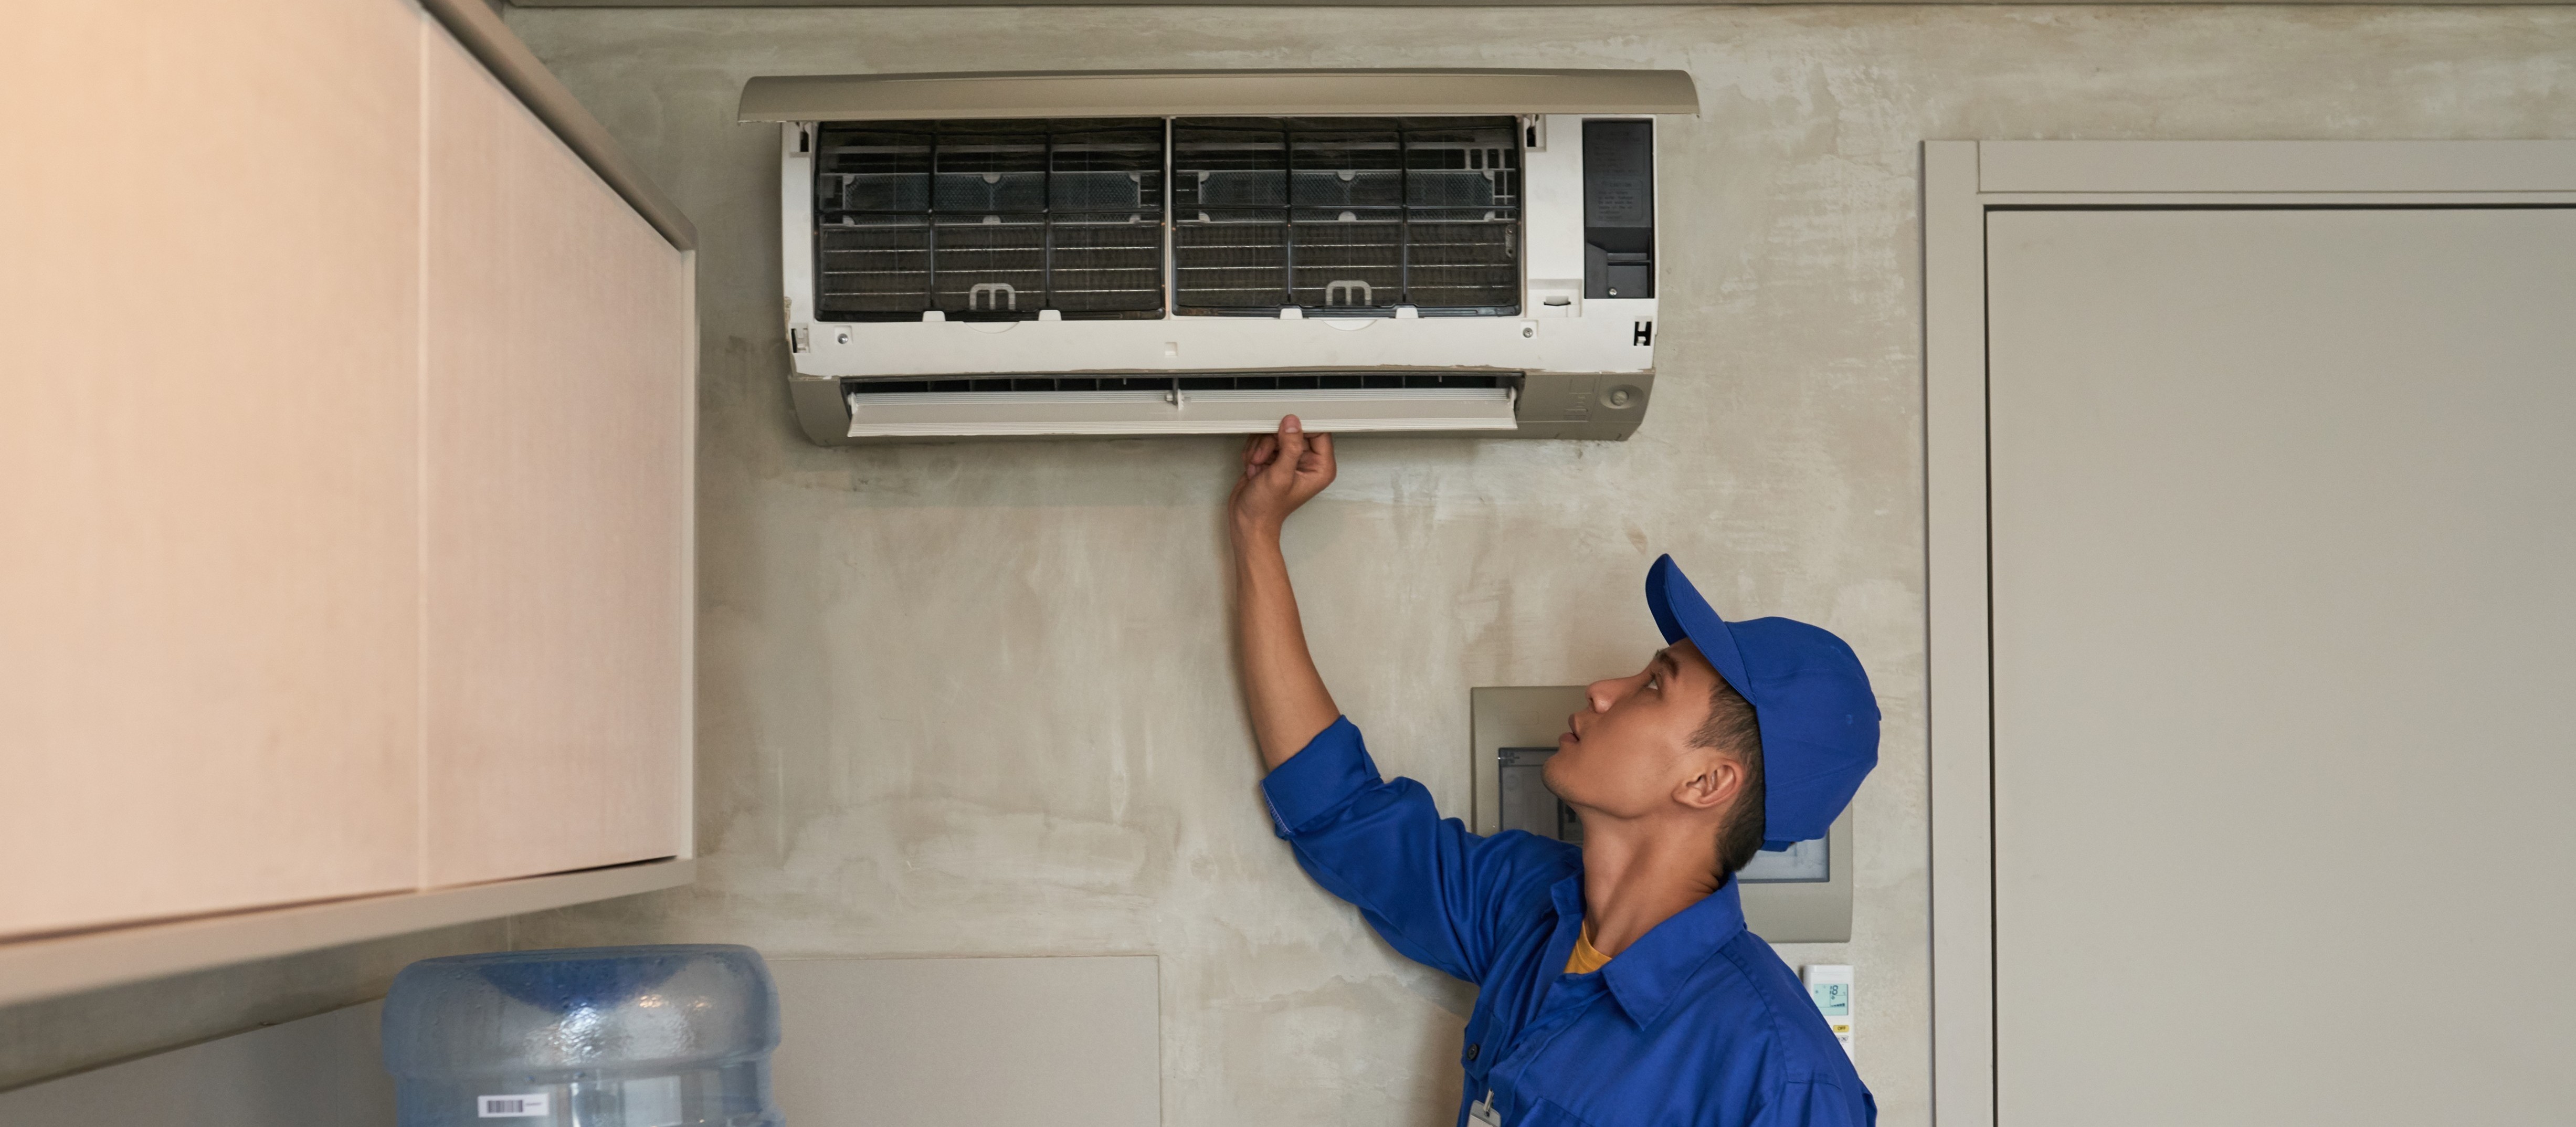 OSM pede impugnação de licitação para manutenção de aparelhos de ar-condicionado 